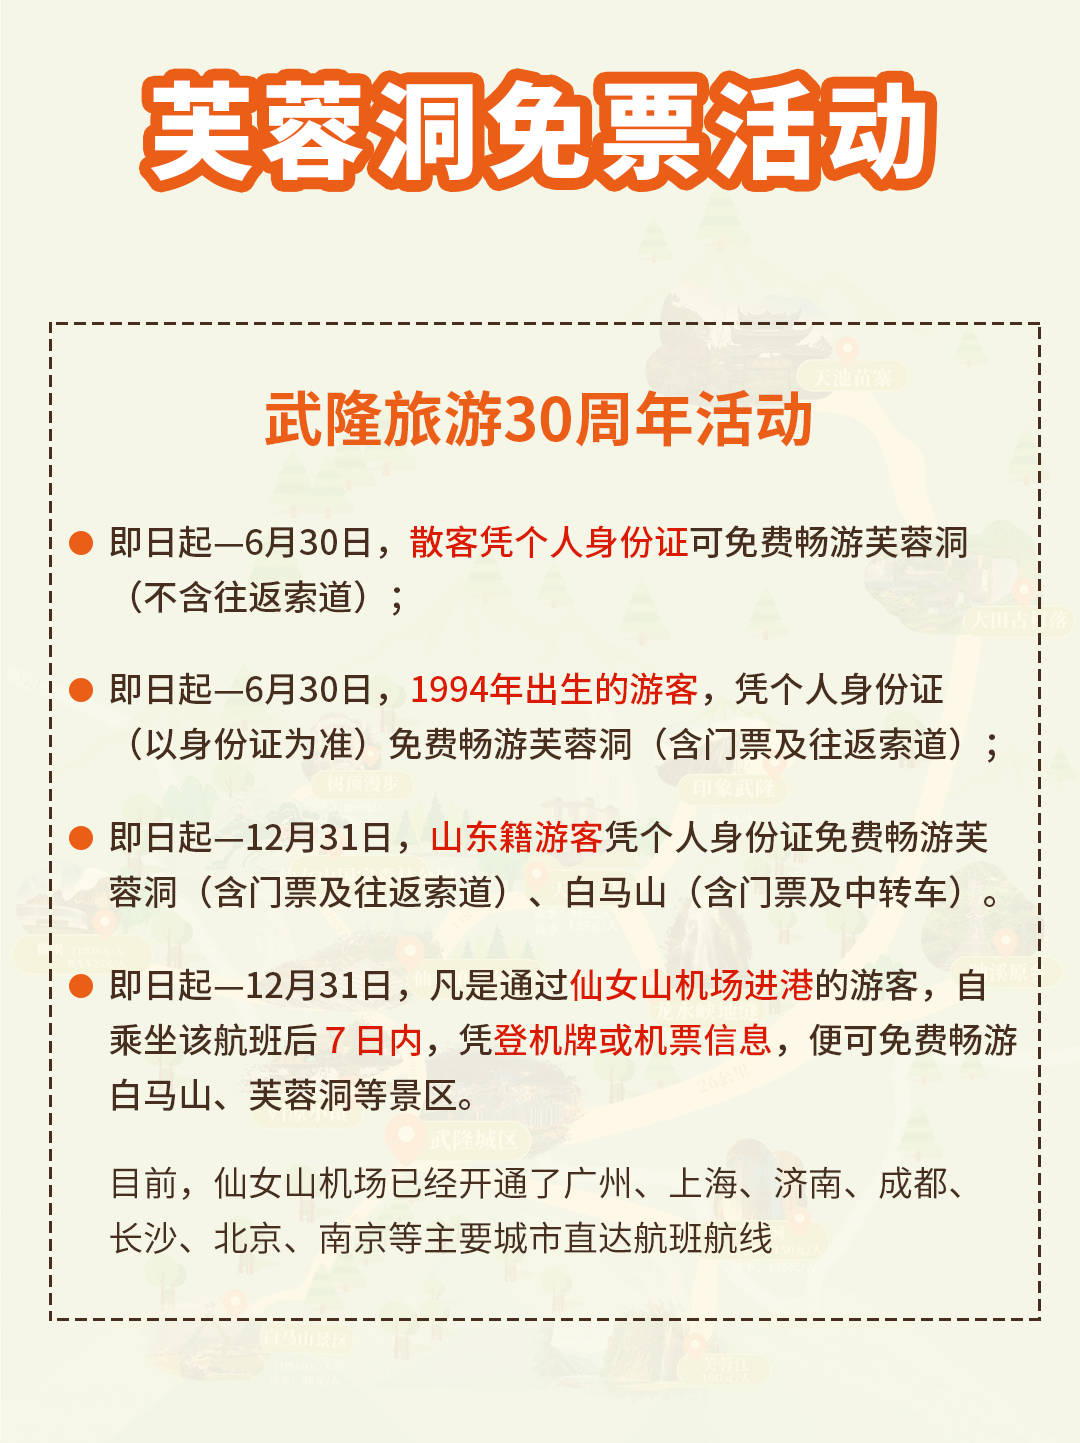 重庆迎龙峡景区门票图片